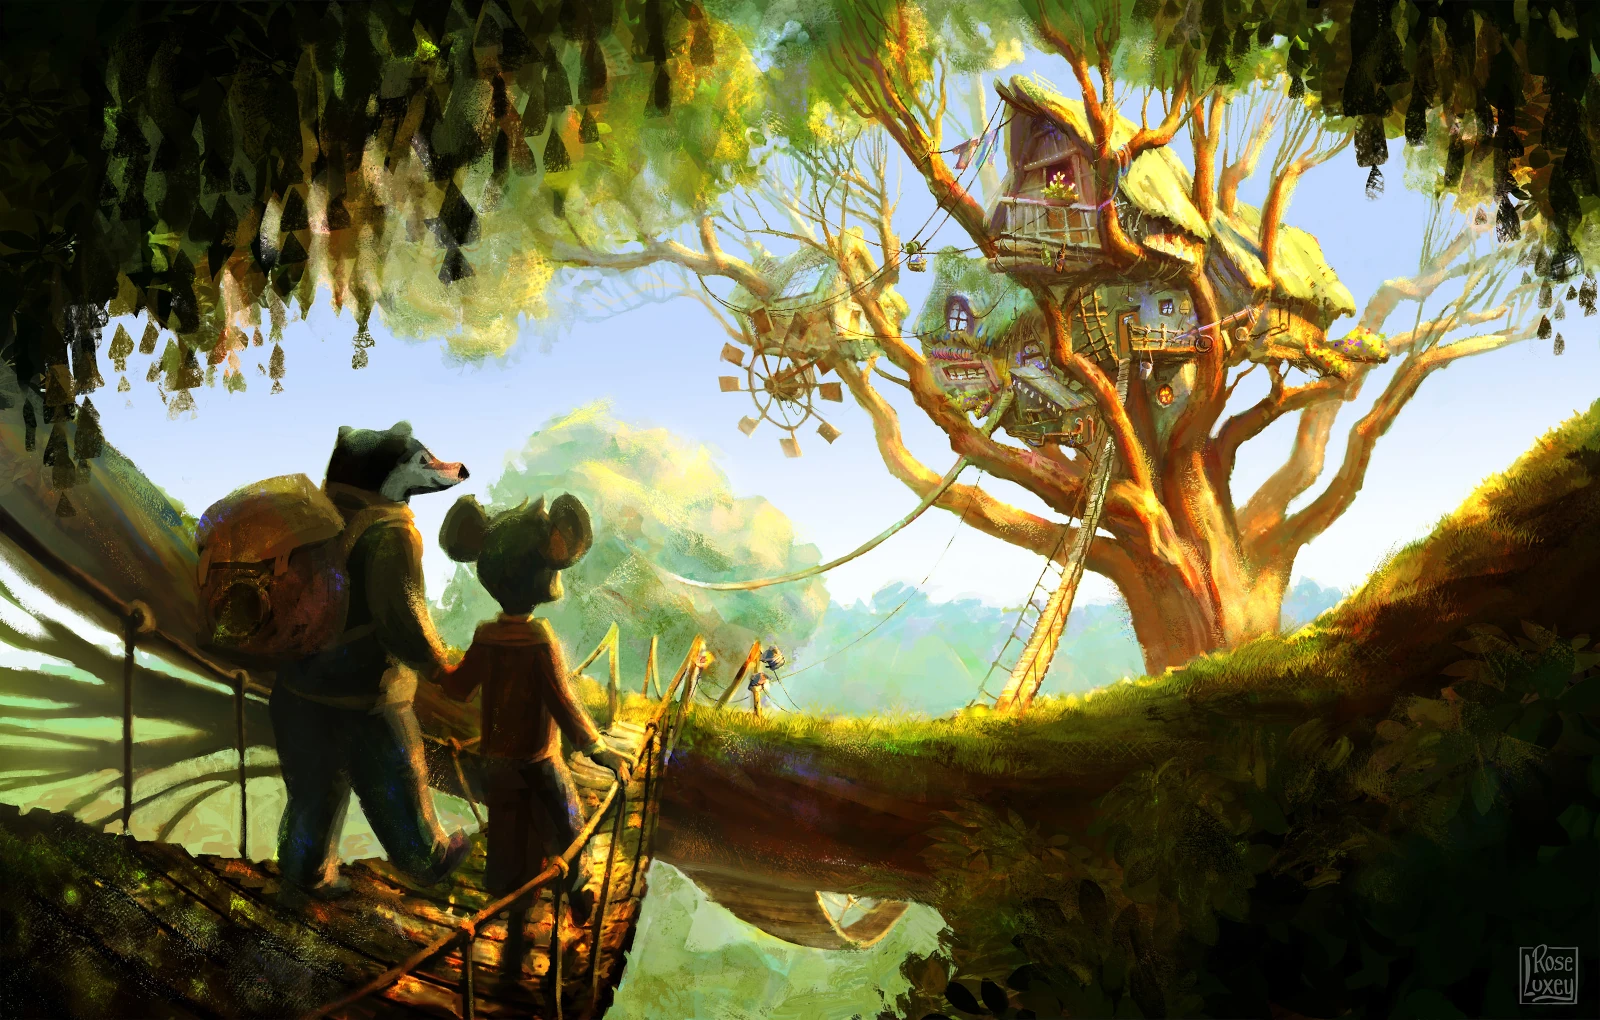 Deux personnages qui regardent et s'avancent vers une maison cabane perchée dans un arbre, illustrant notre envie d'un internet plus éthique.